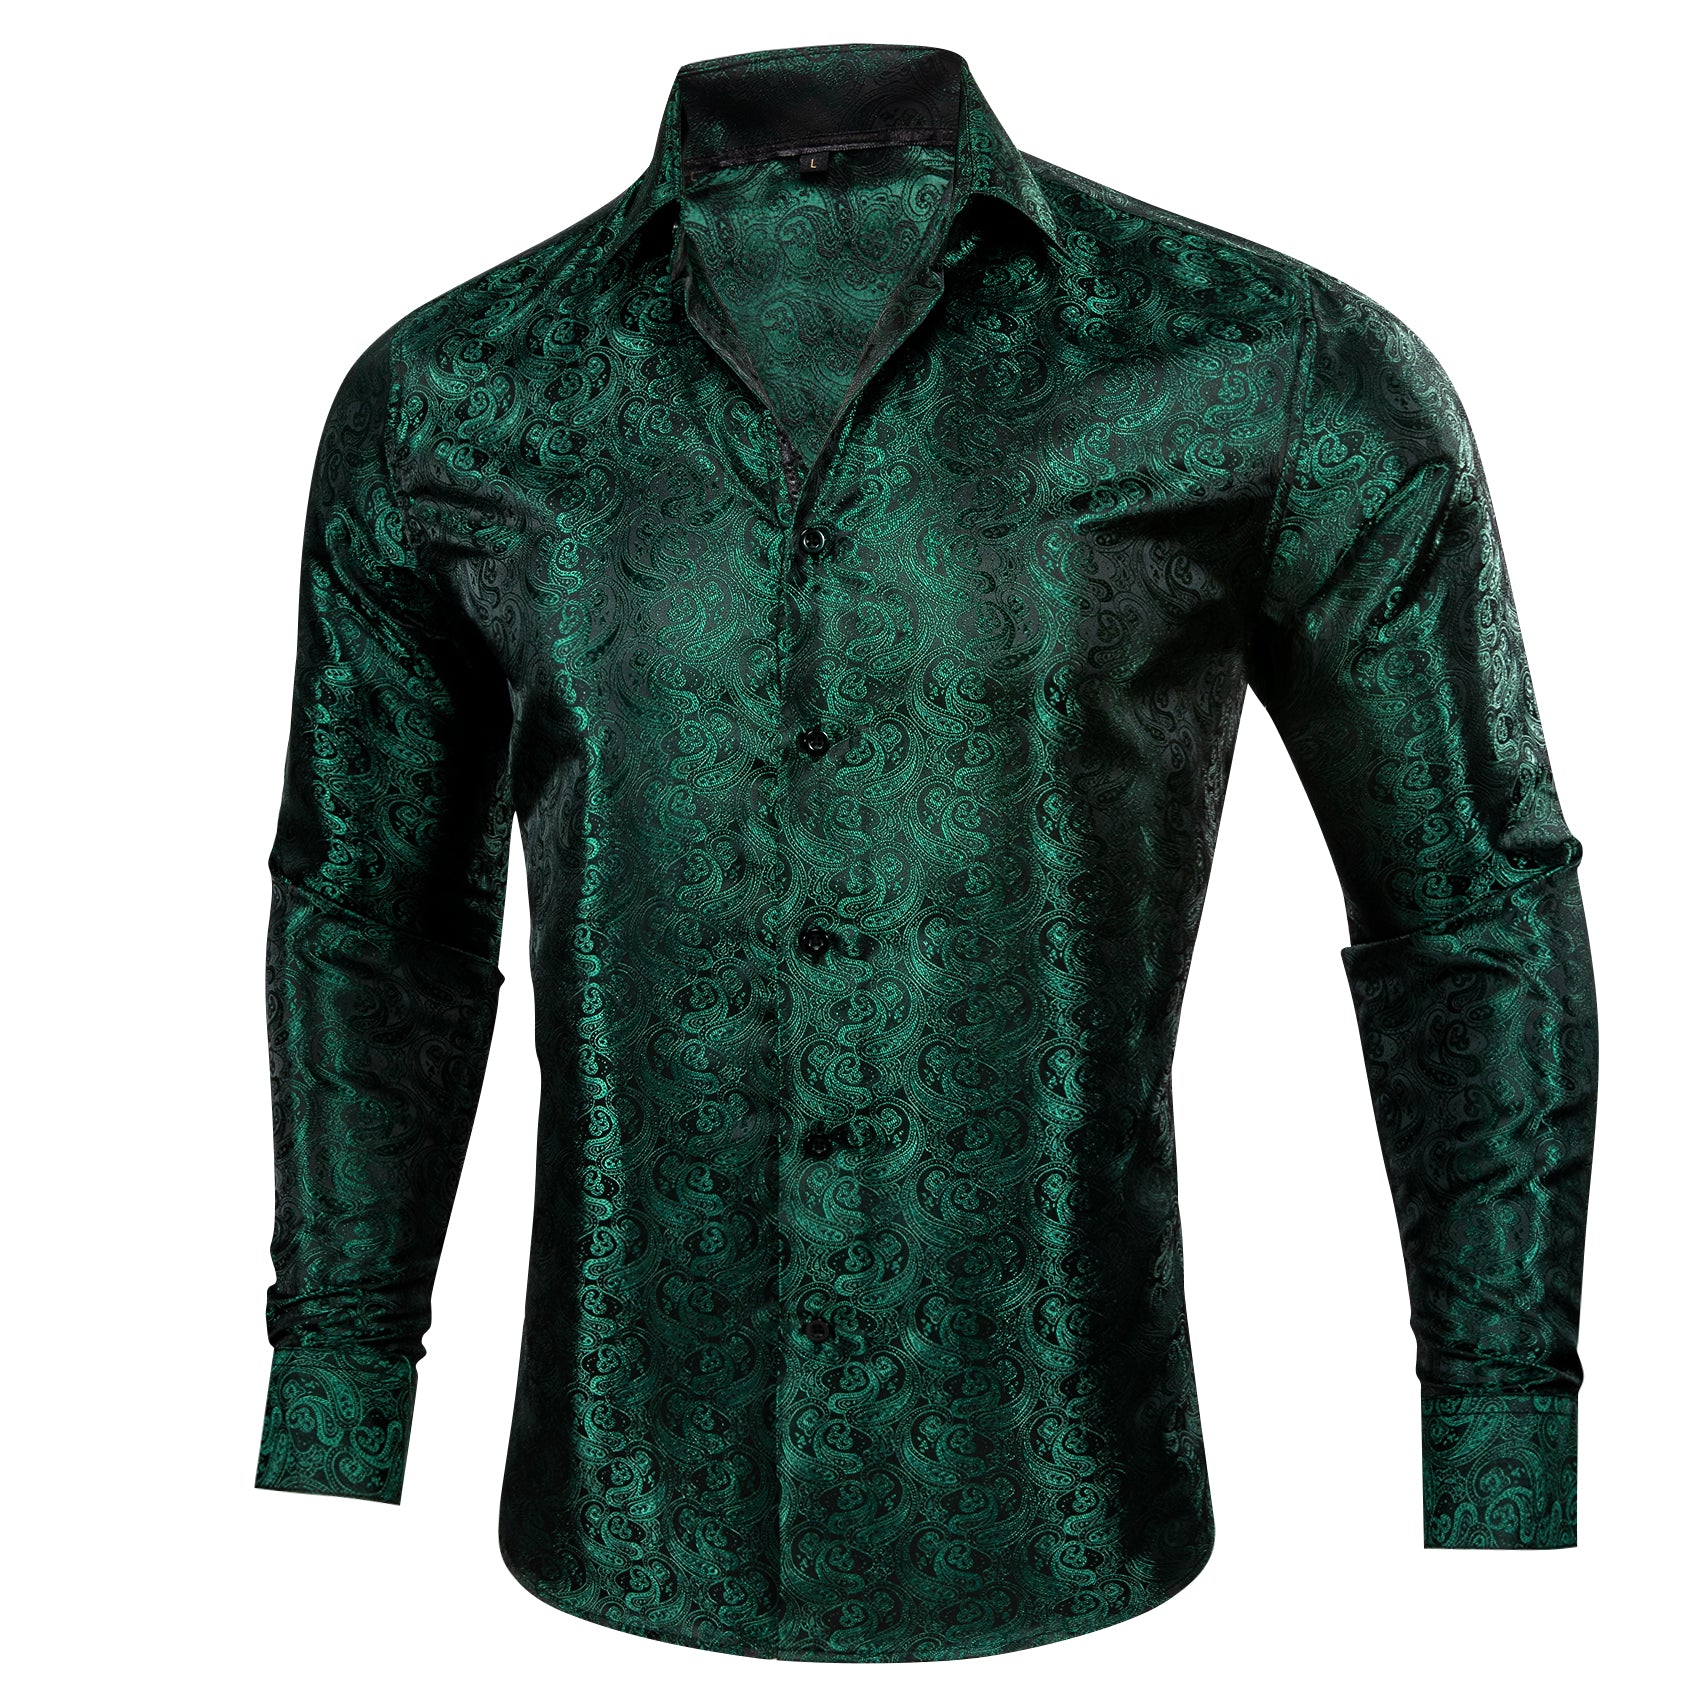 Barry.wang New Green Paisley Silk Shirt